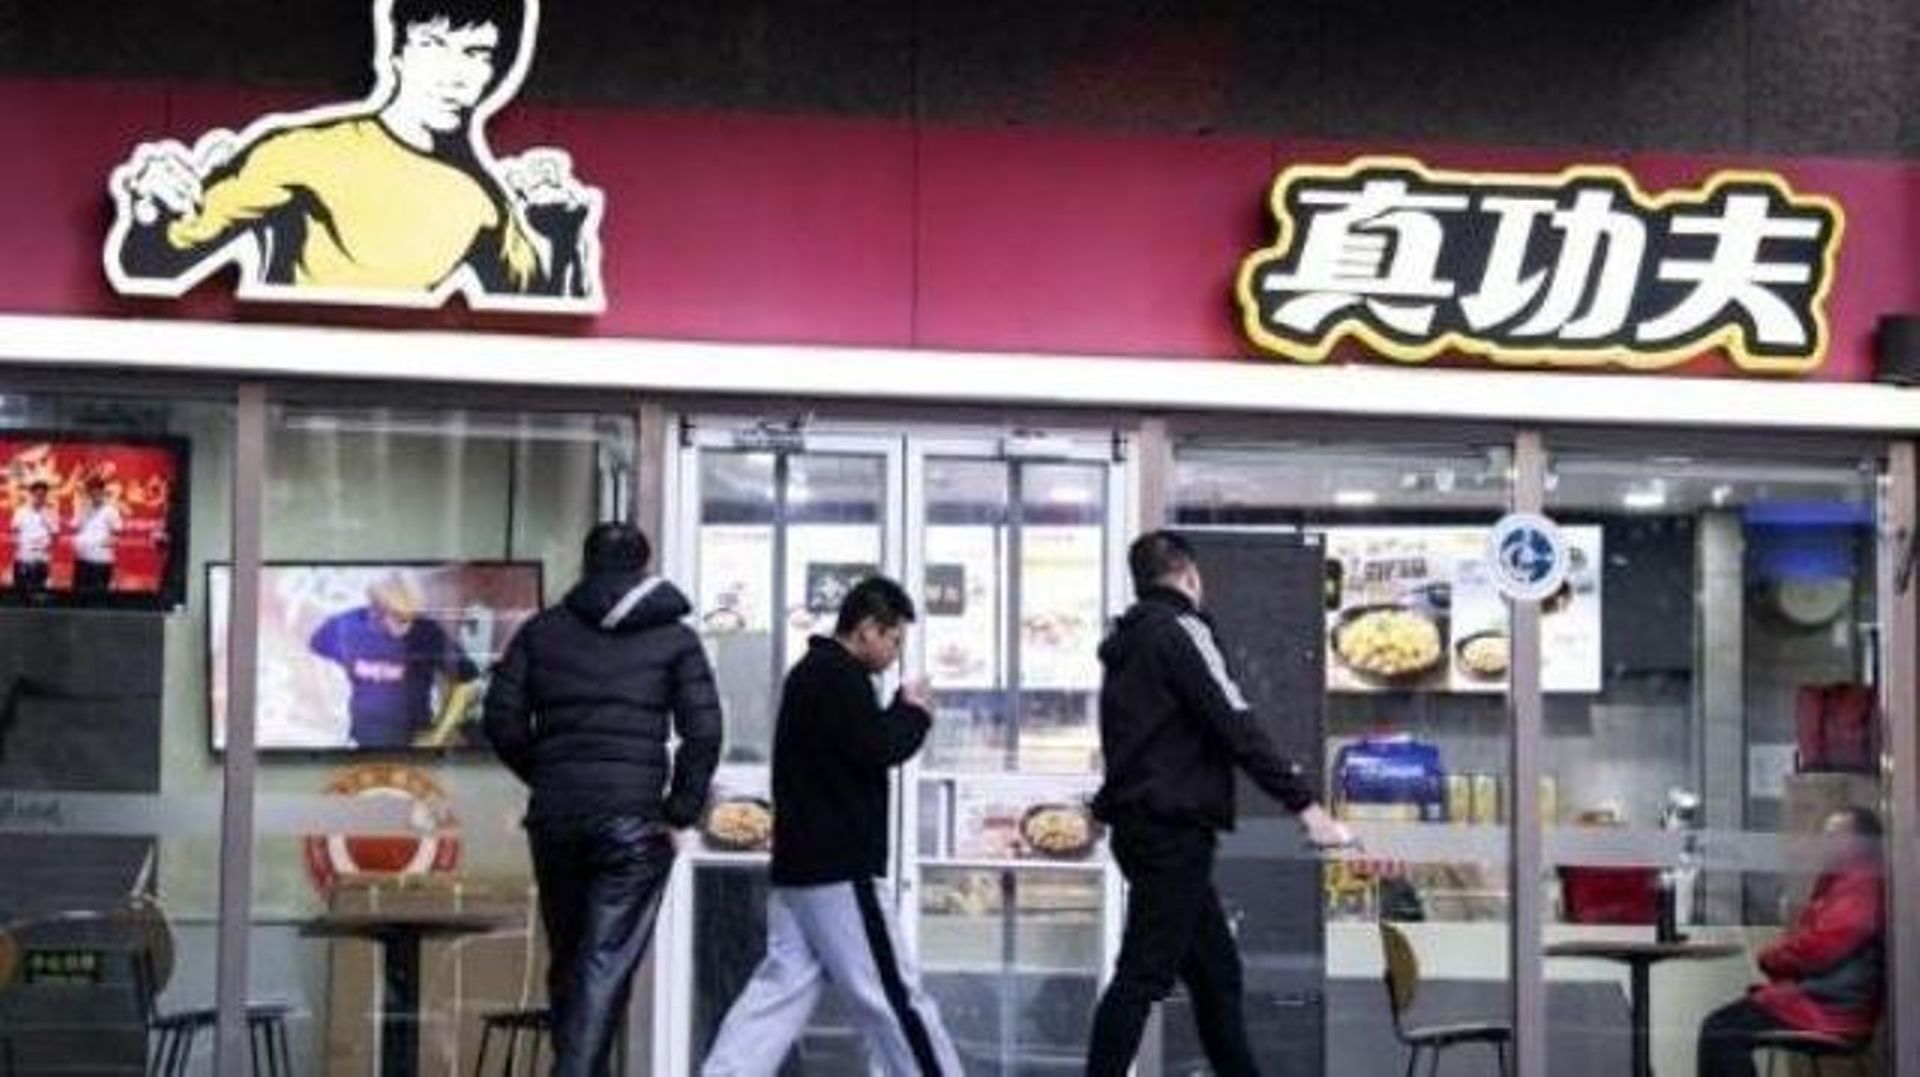 La fille de Bruce Lee réclame des millions à une chaîne de fast food chinoise